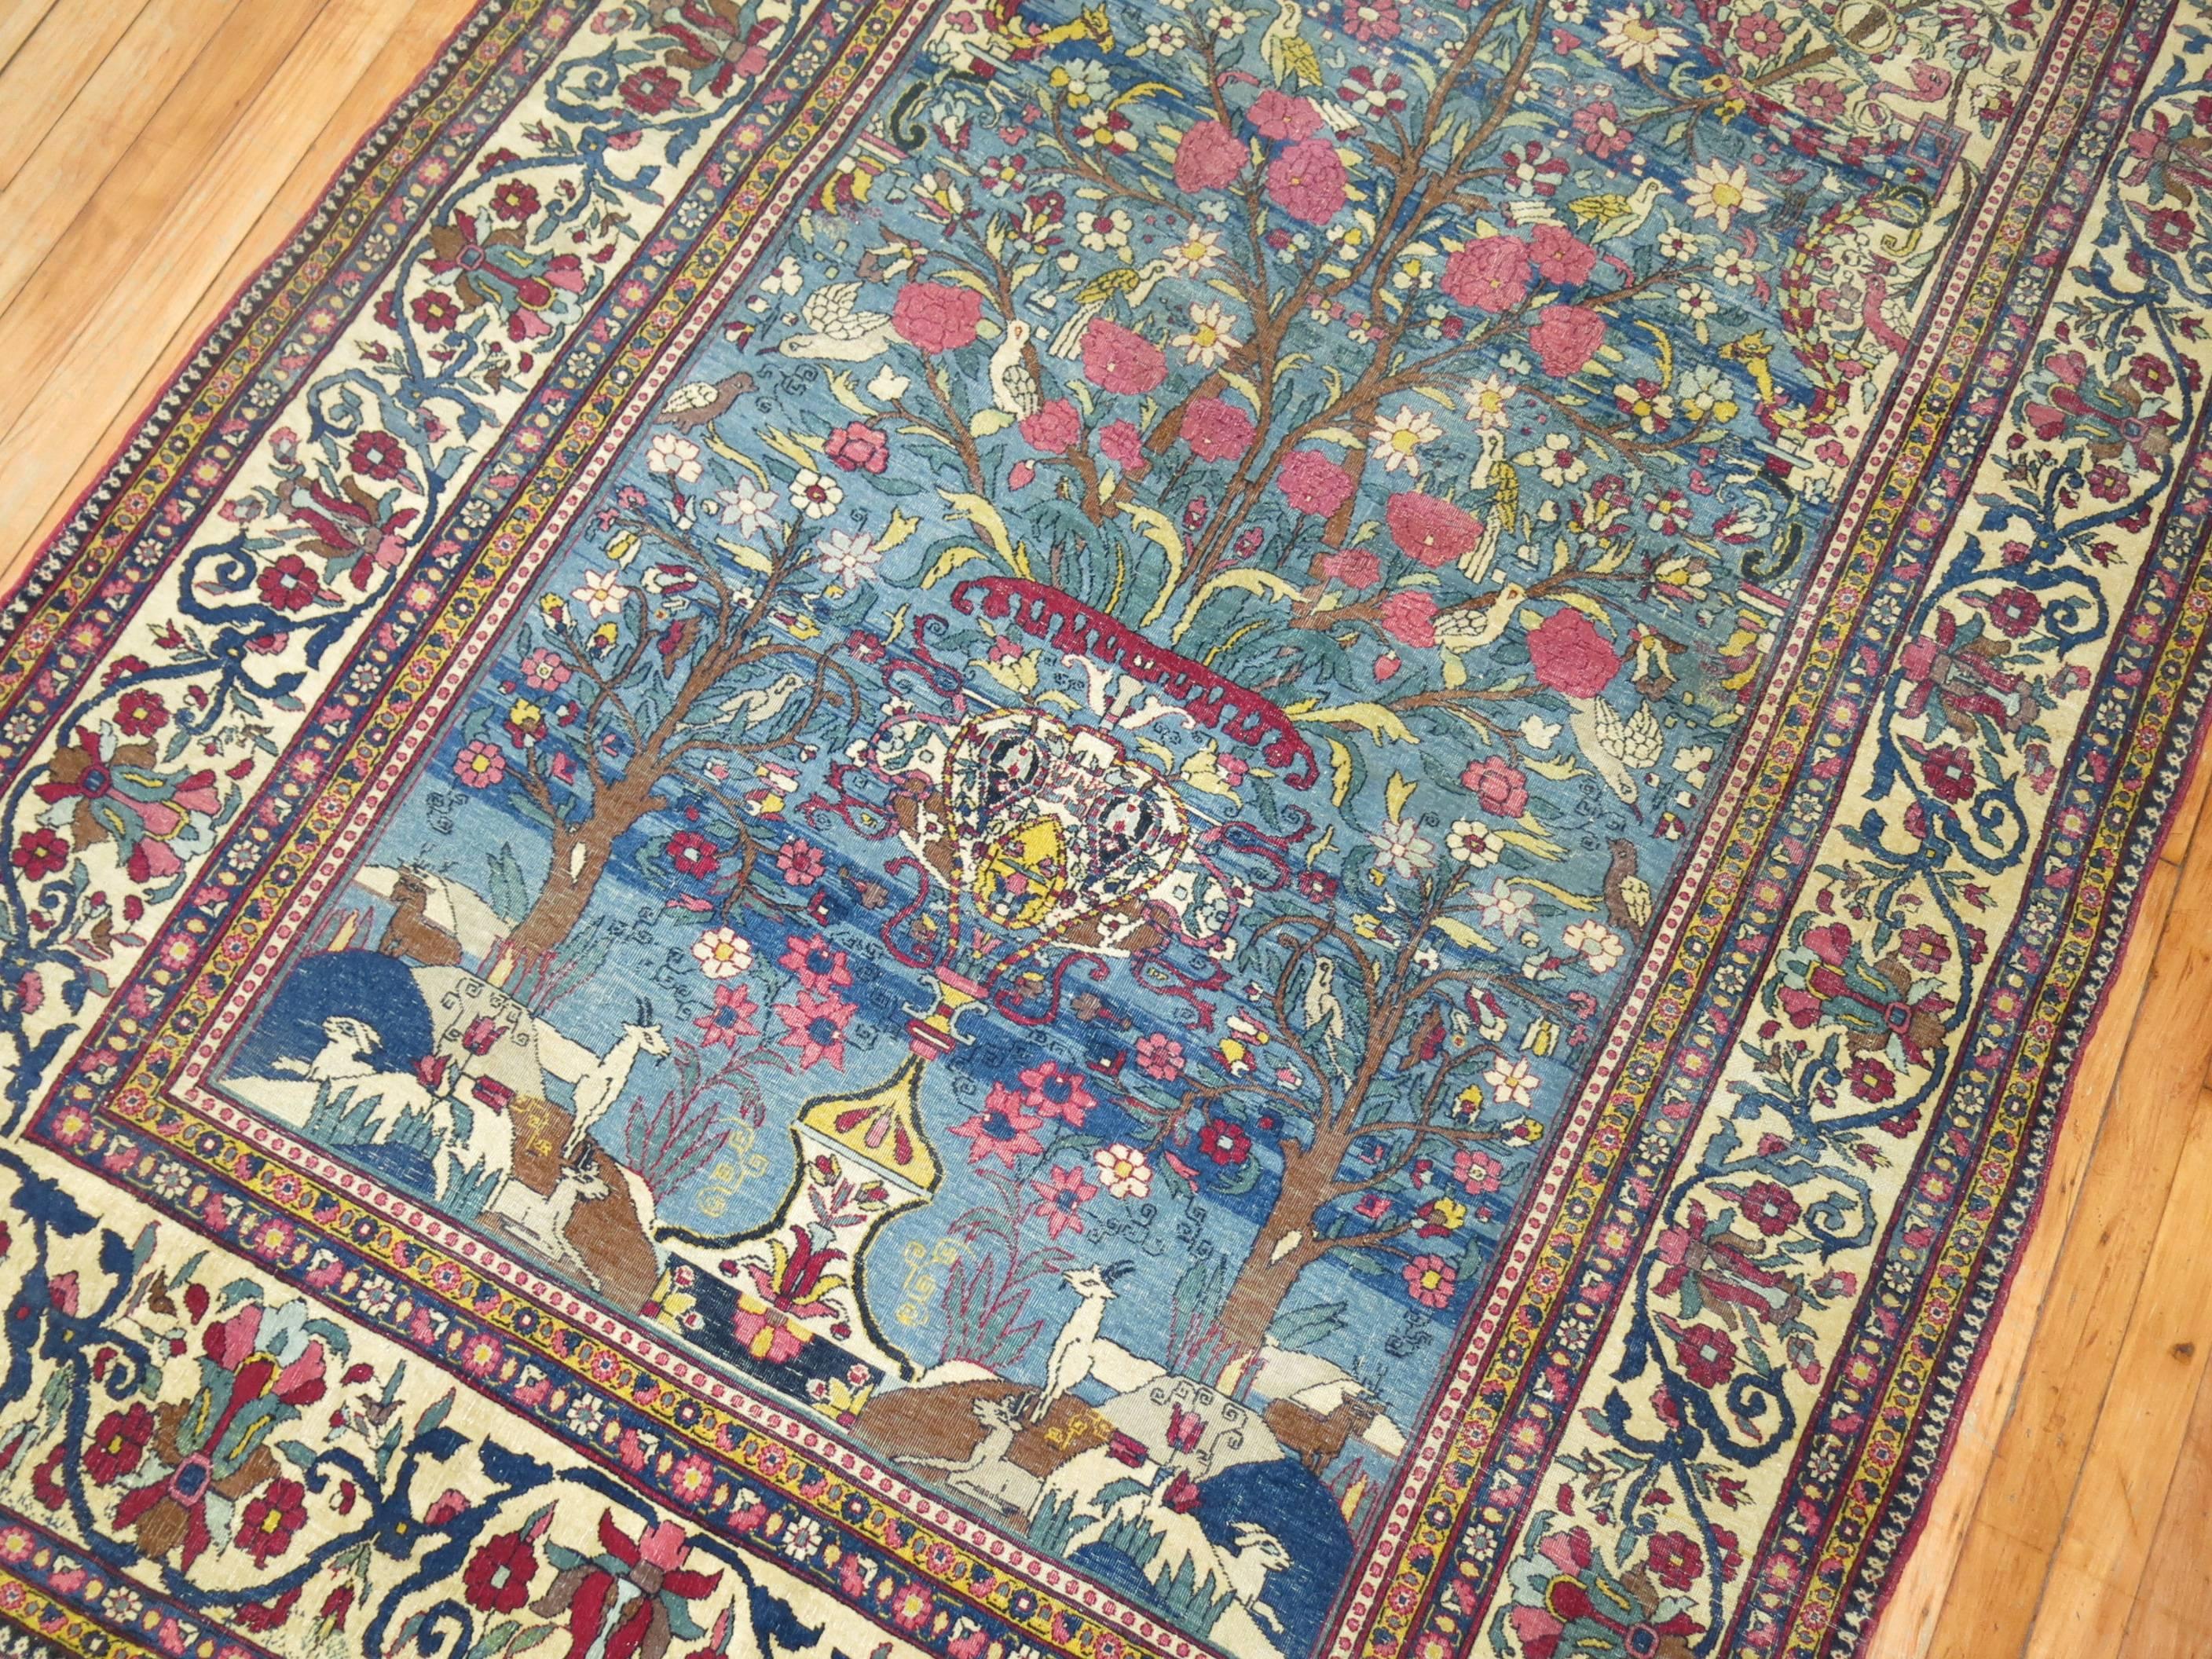 Pictorial Persian Isfahan Prayer Carpet 1